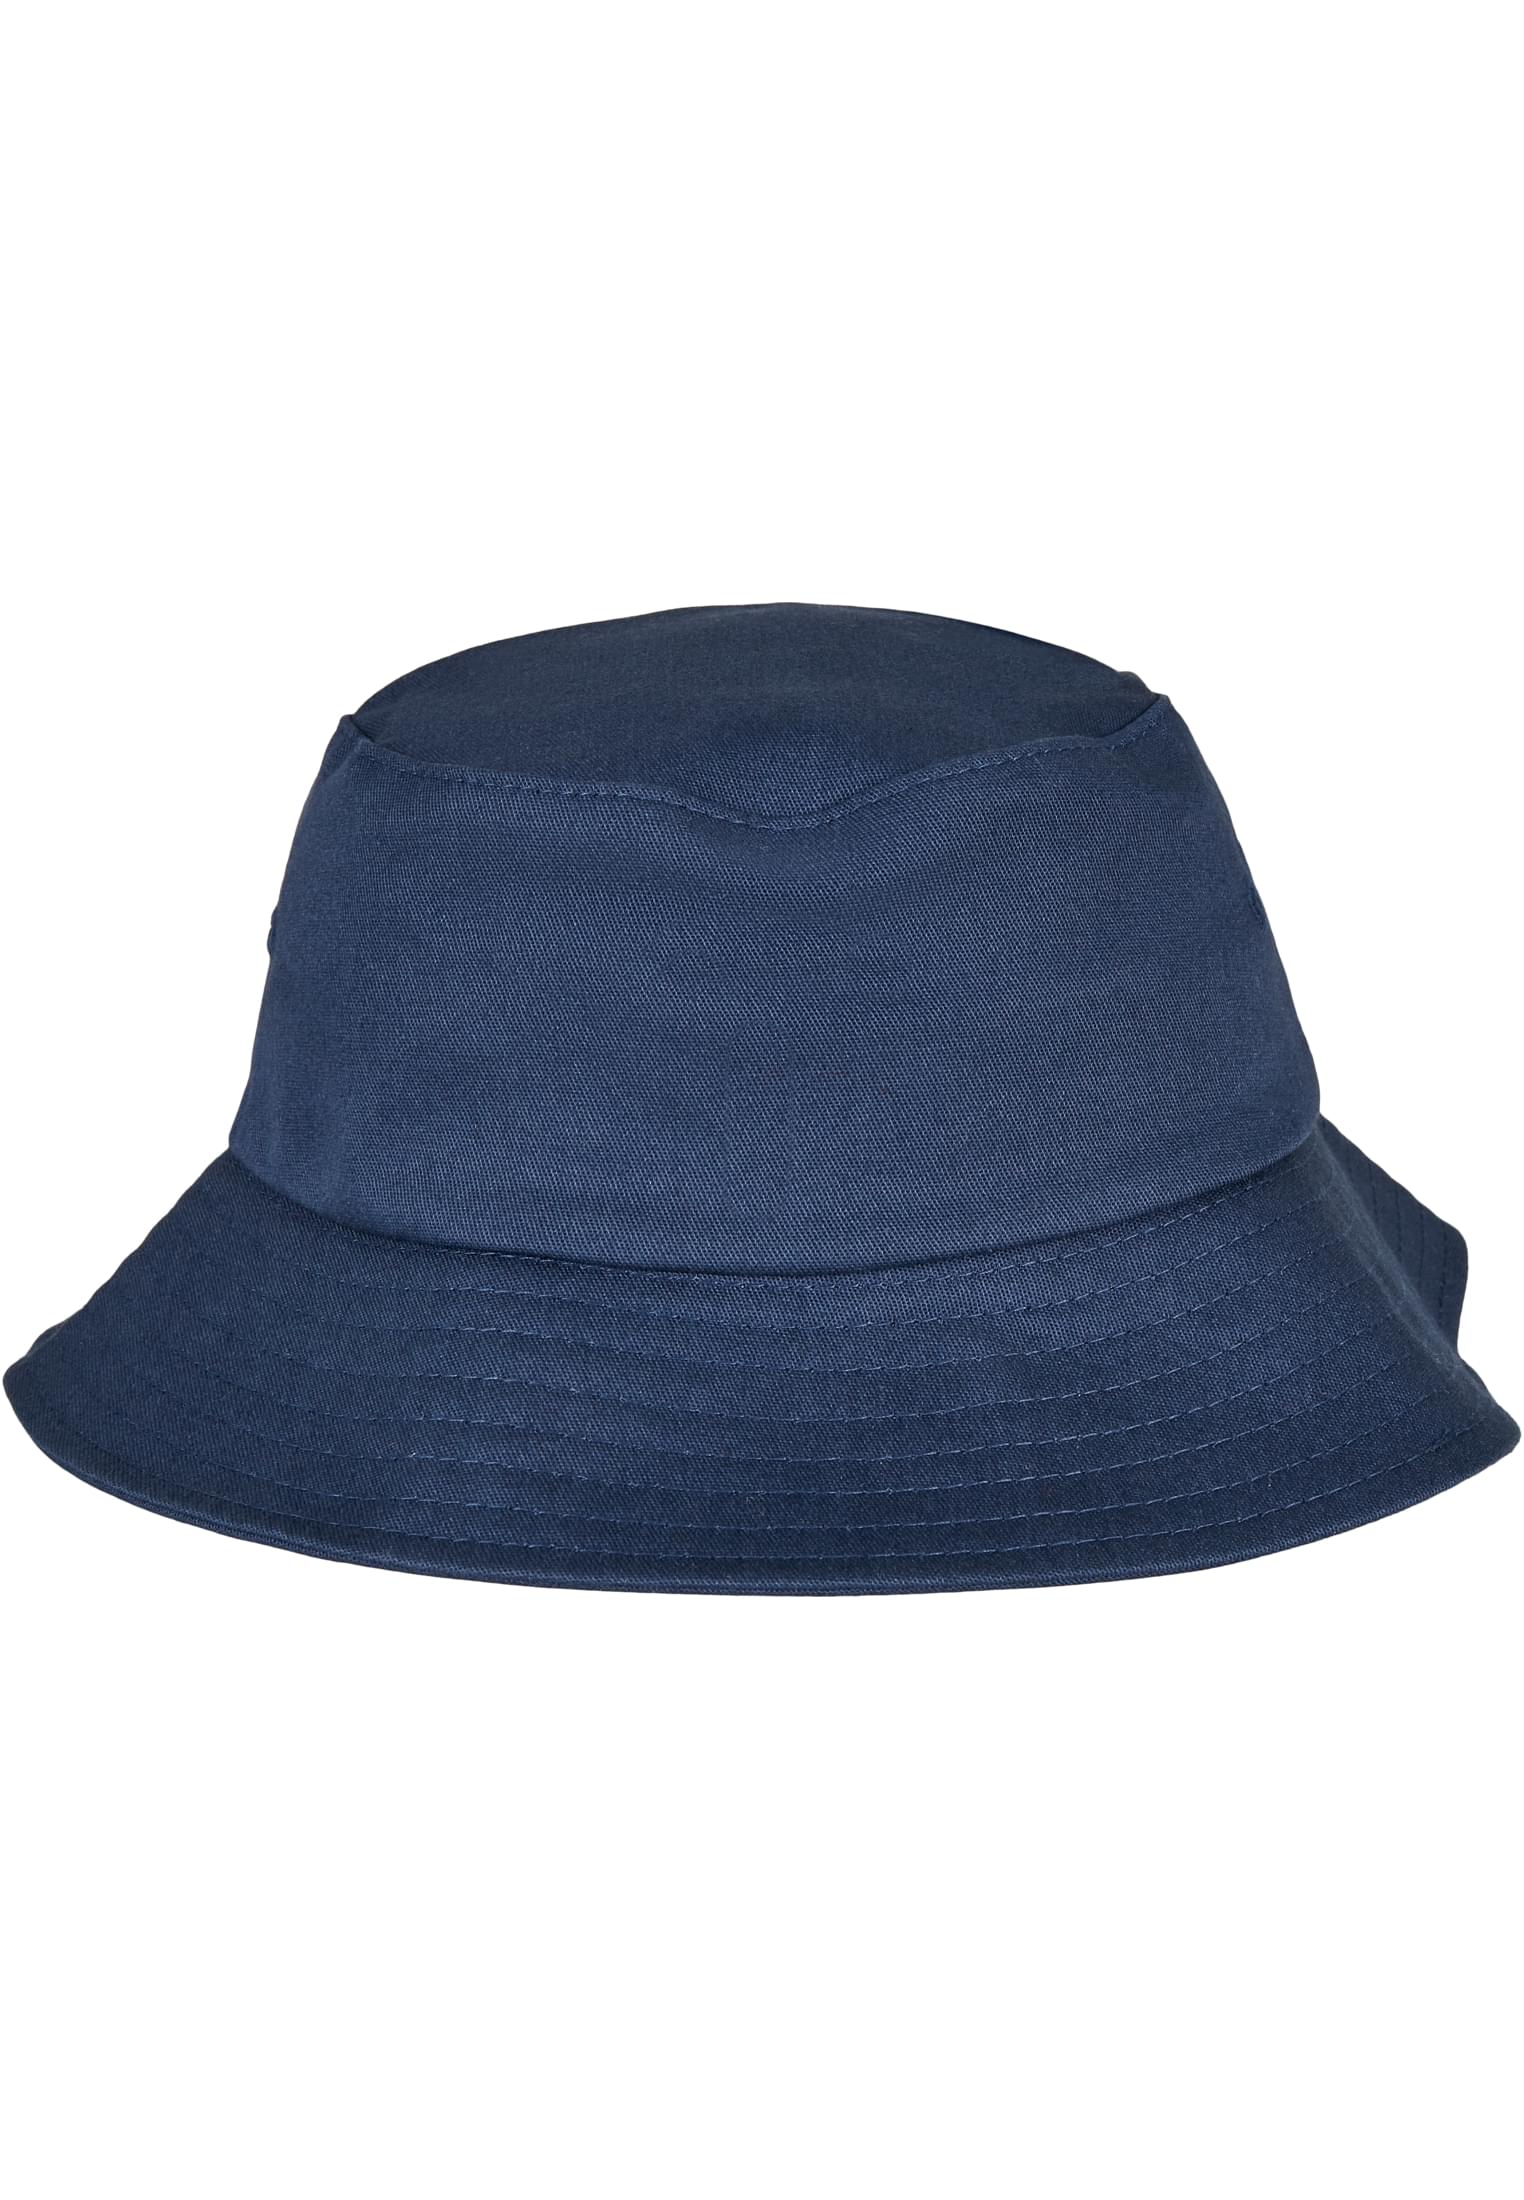 Бейсболка Flexfit Bucket Hat, темно синий